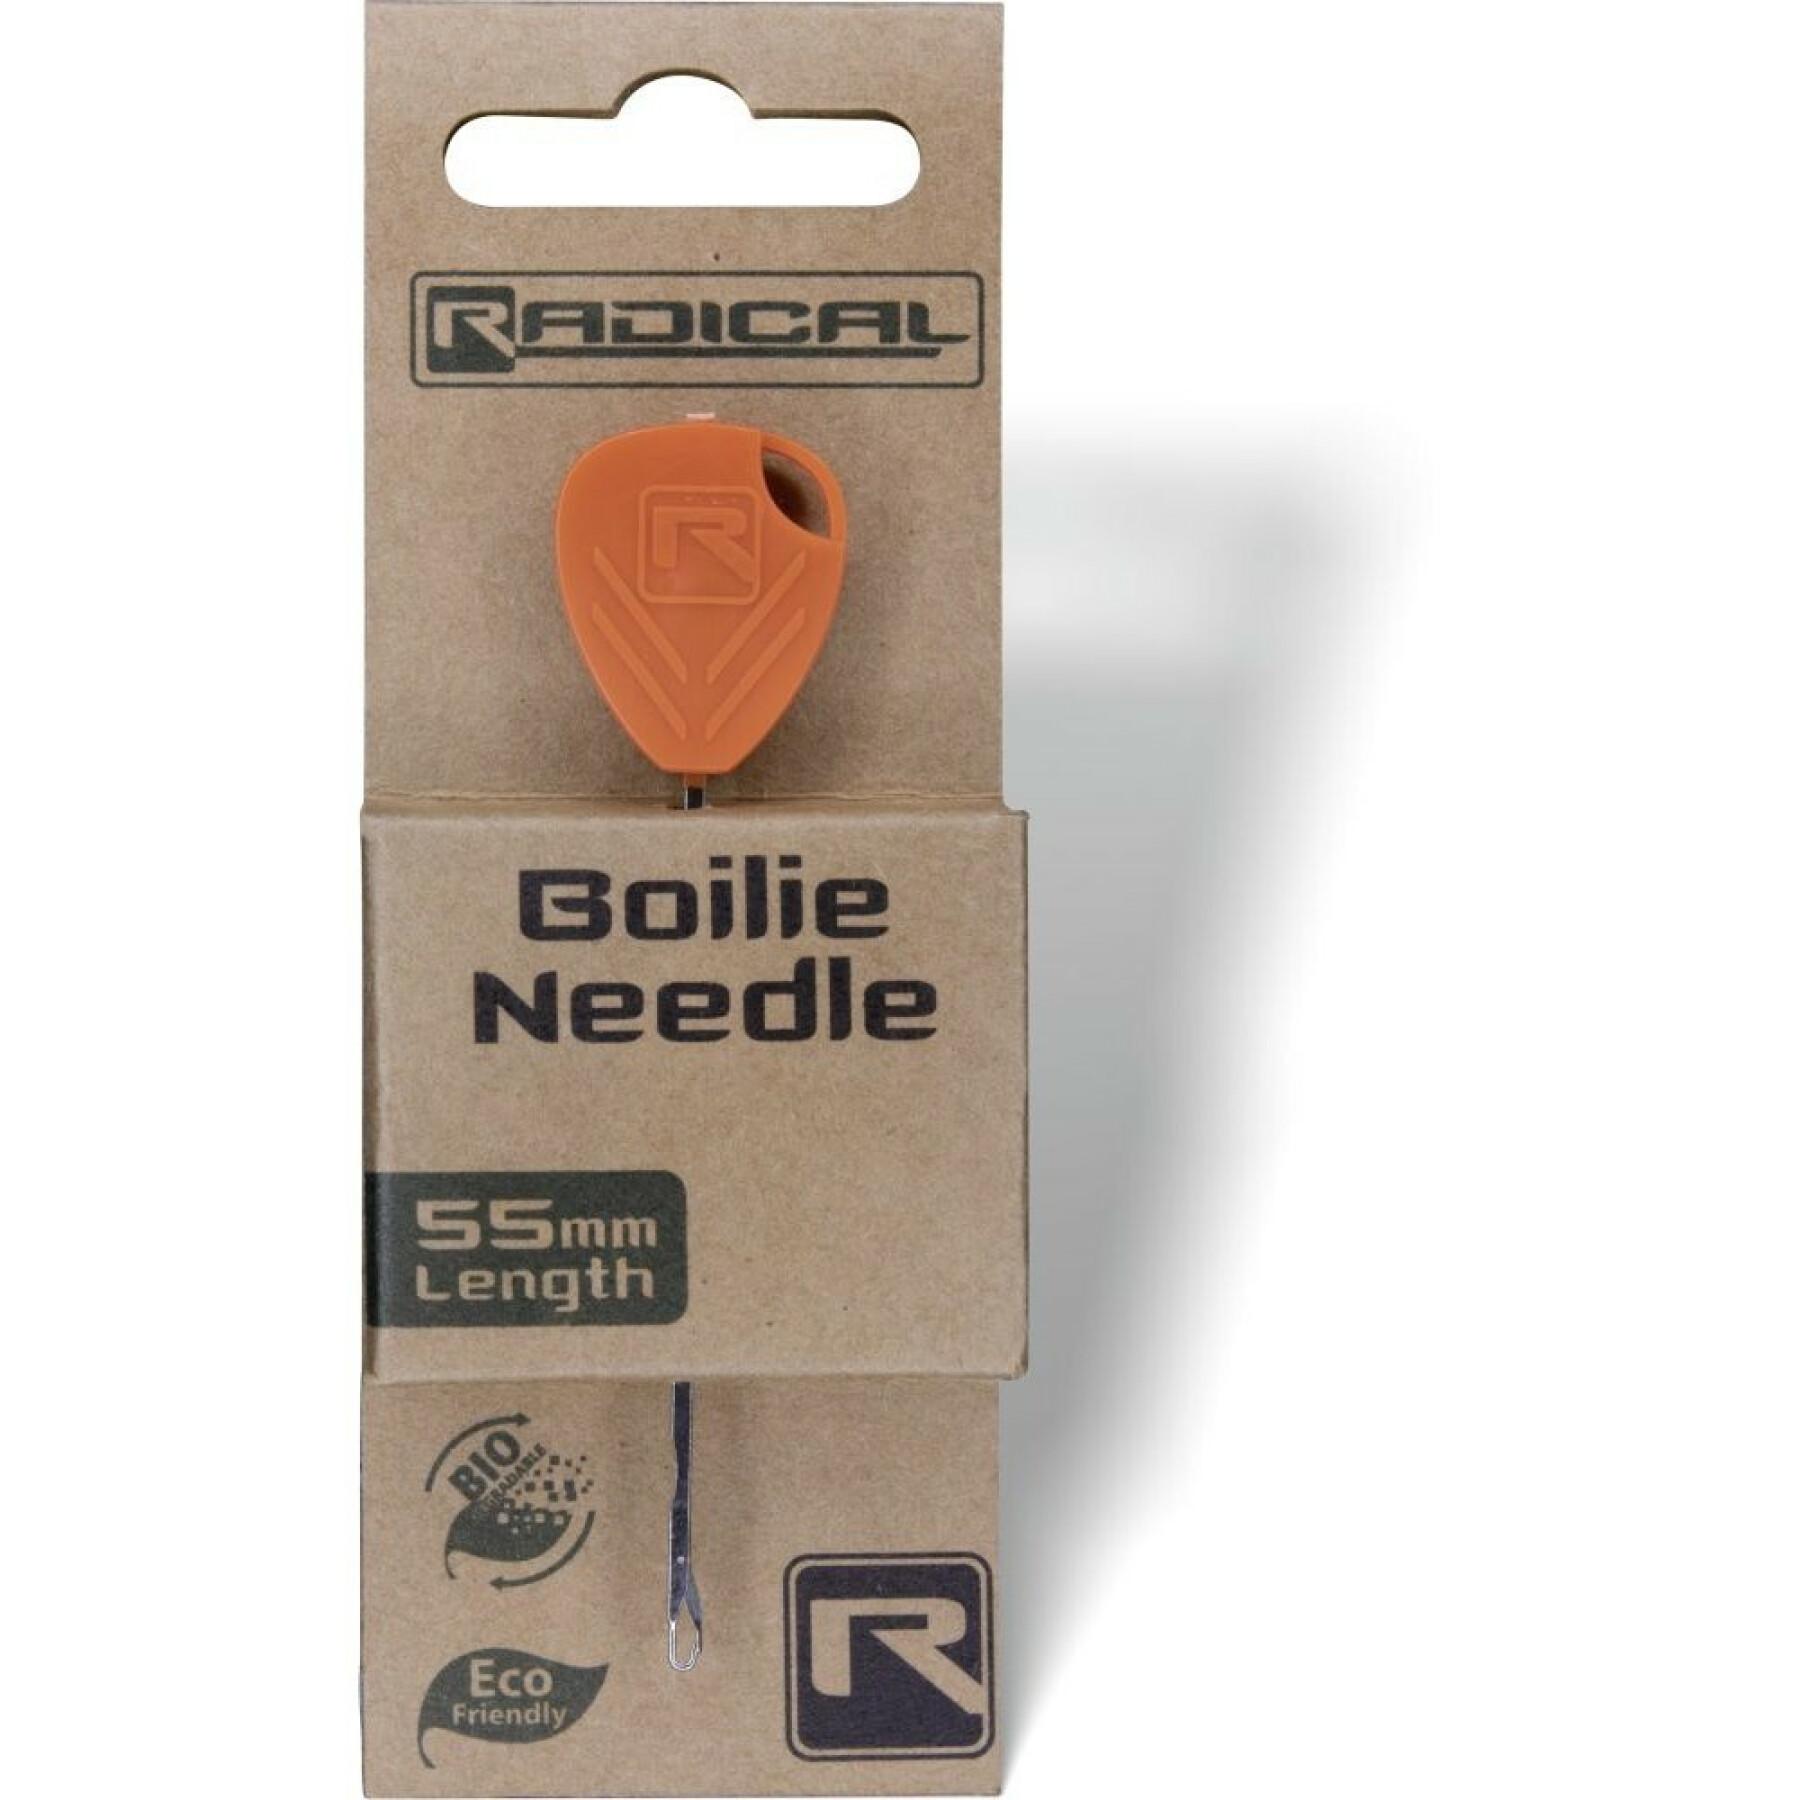 Needle Radical Boilie Needle